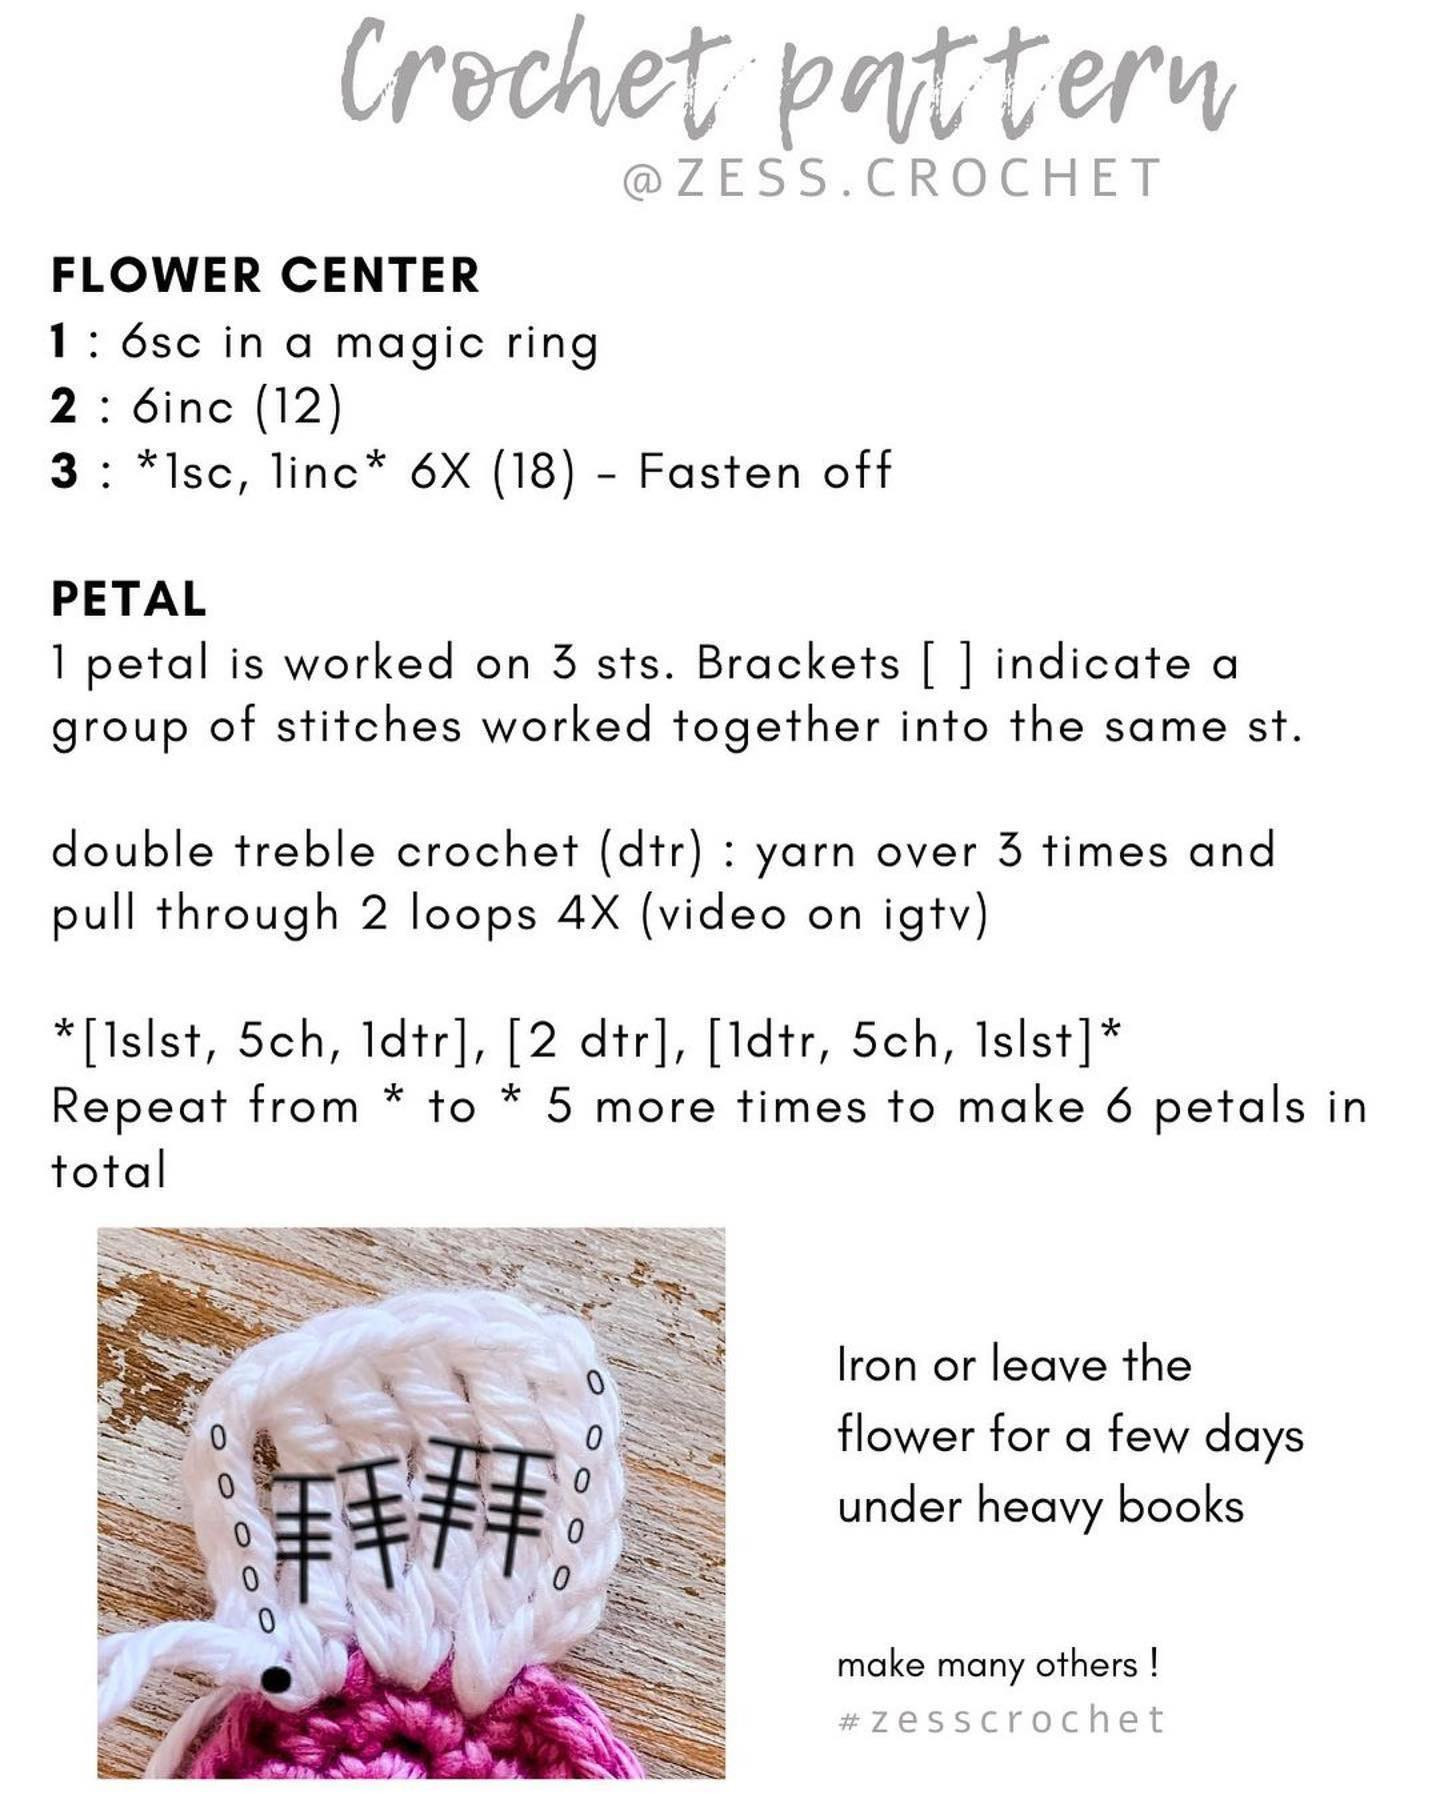 6 petal flower crochet pattern